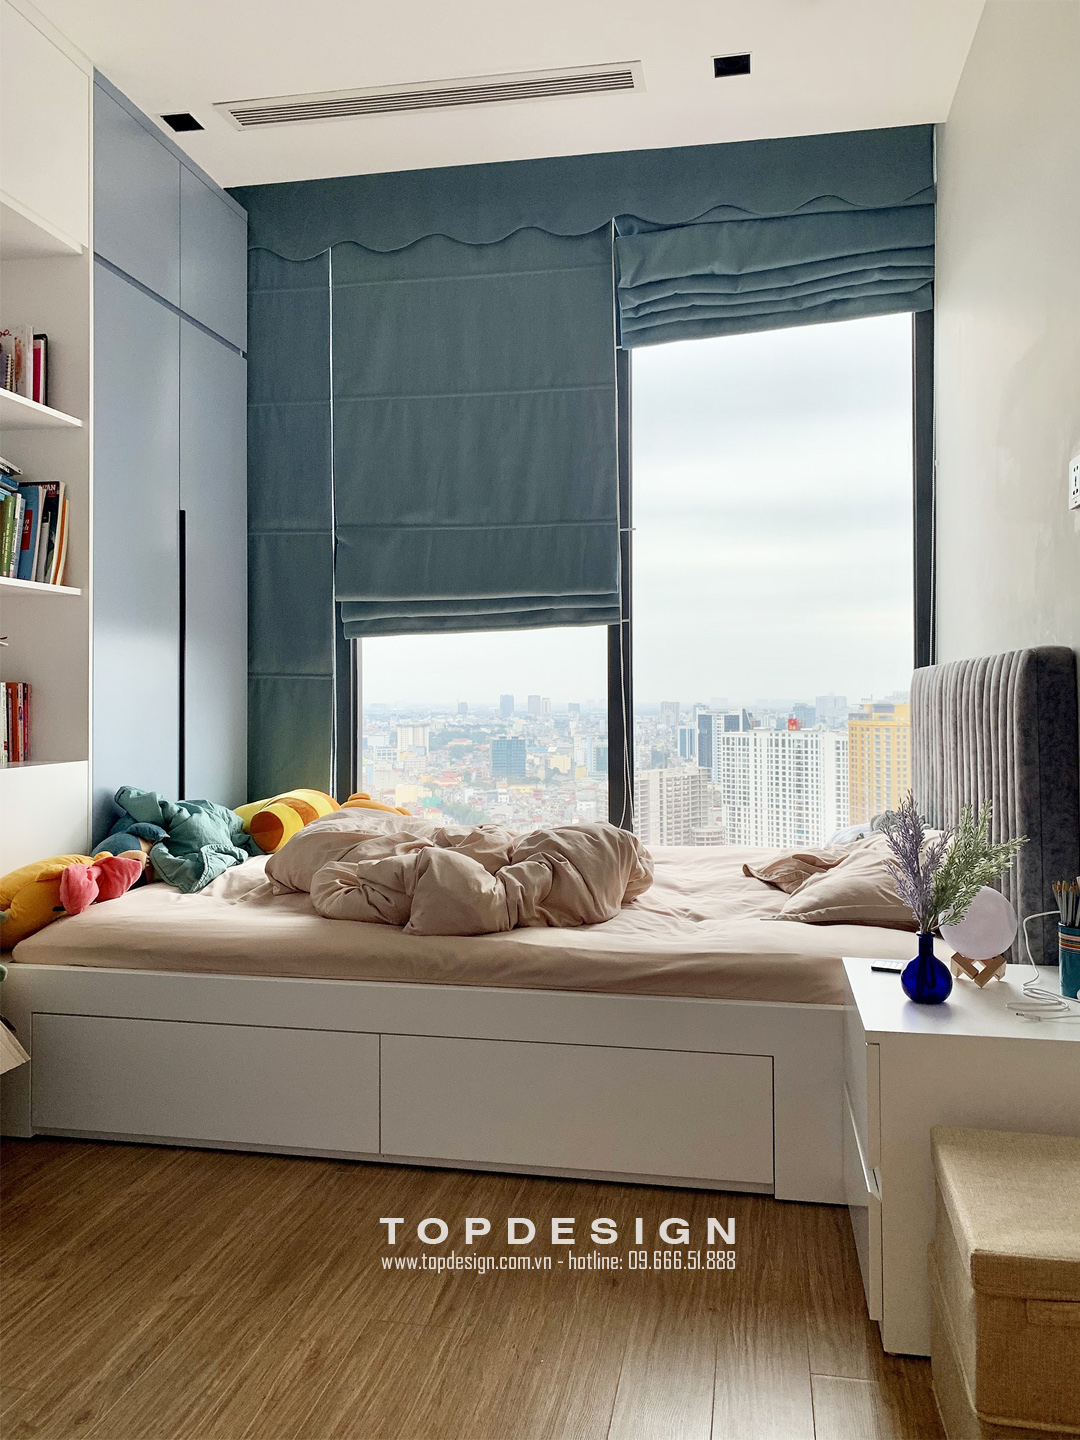 Mẫu nội thất sang trọng cho căn hộ Vinhomes đẹp hiện đại cao cấp - TOPdesign - phòng ngủ con